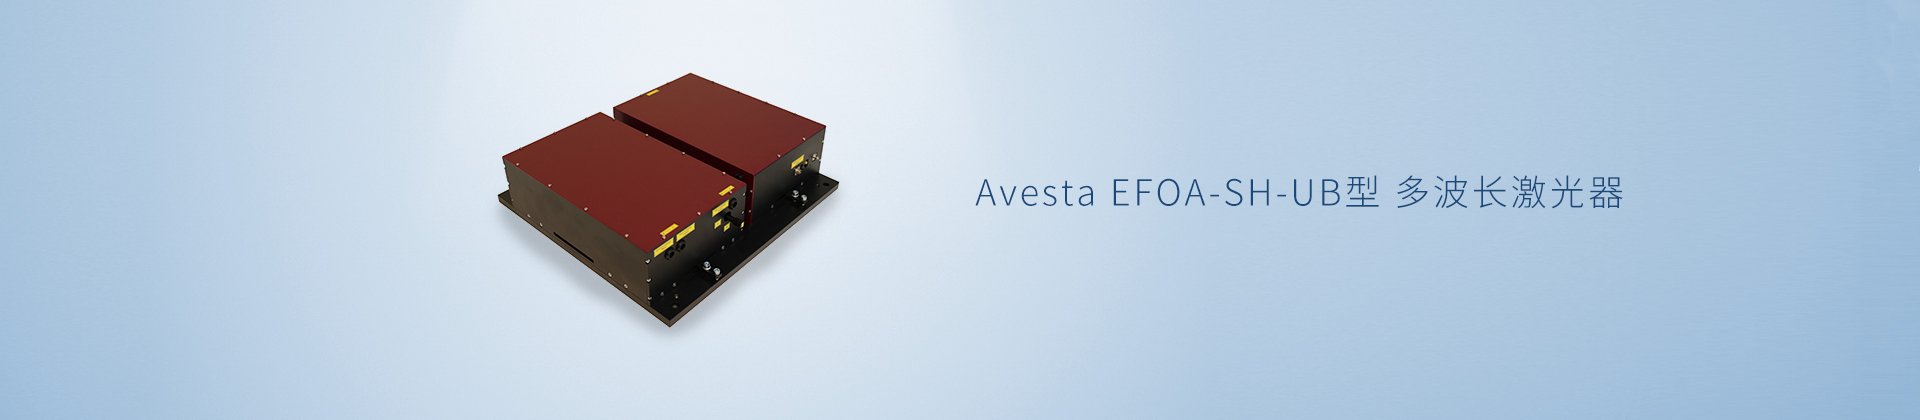 Avesta EFOA-SH-UB型 多波长激光器